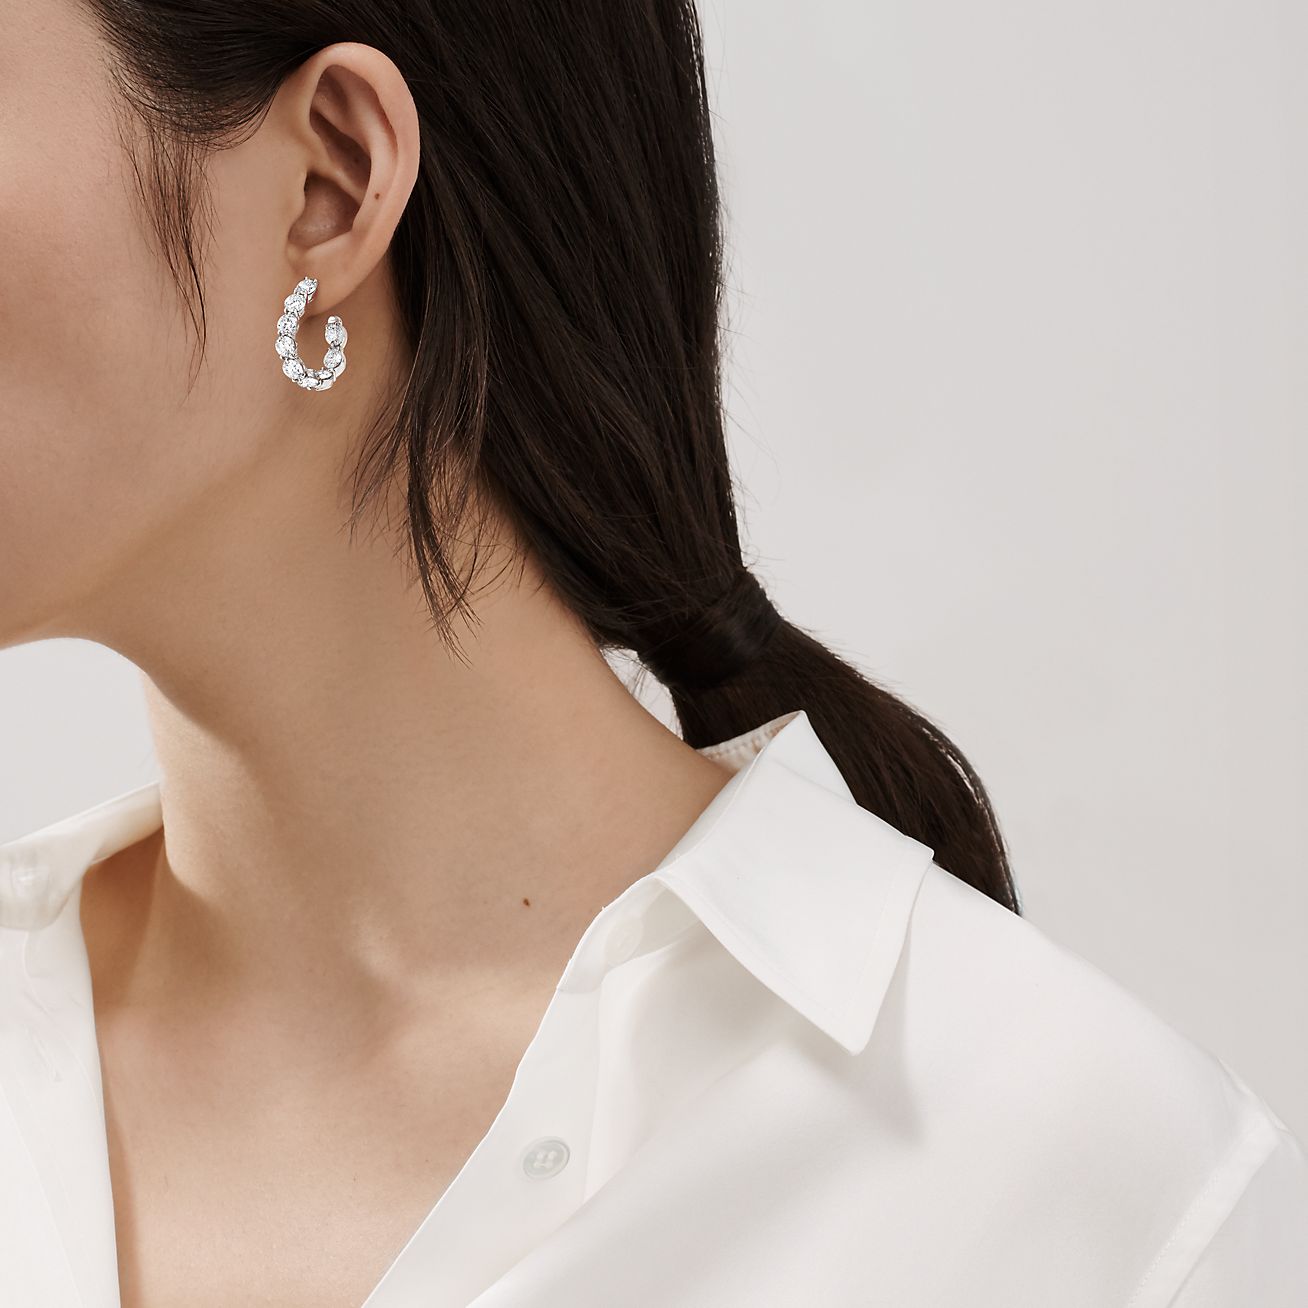 Inside-out hoop earrings in platinum 